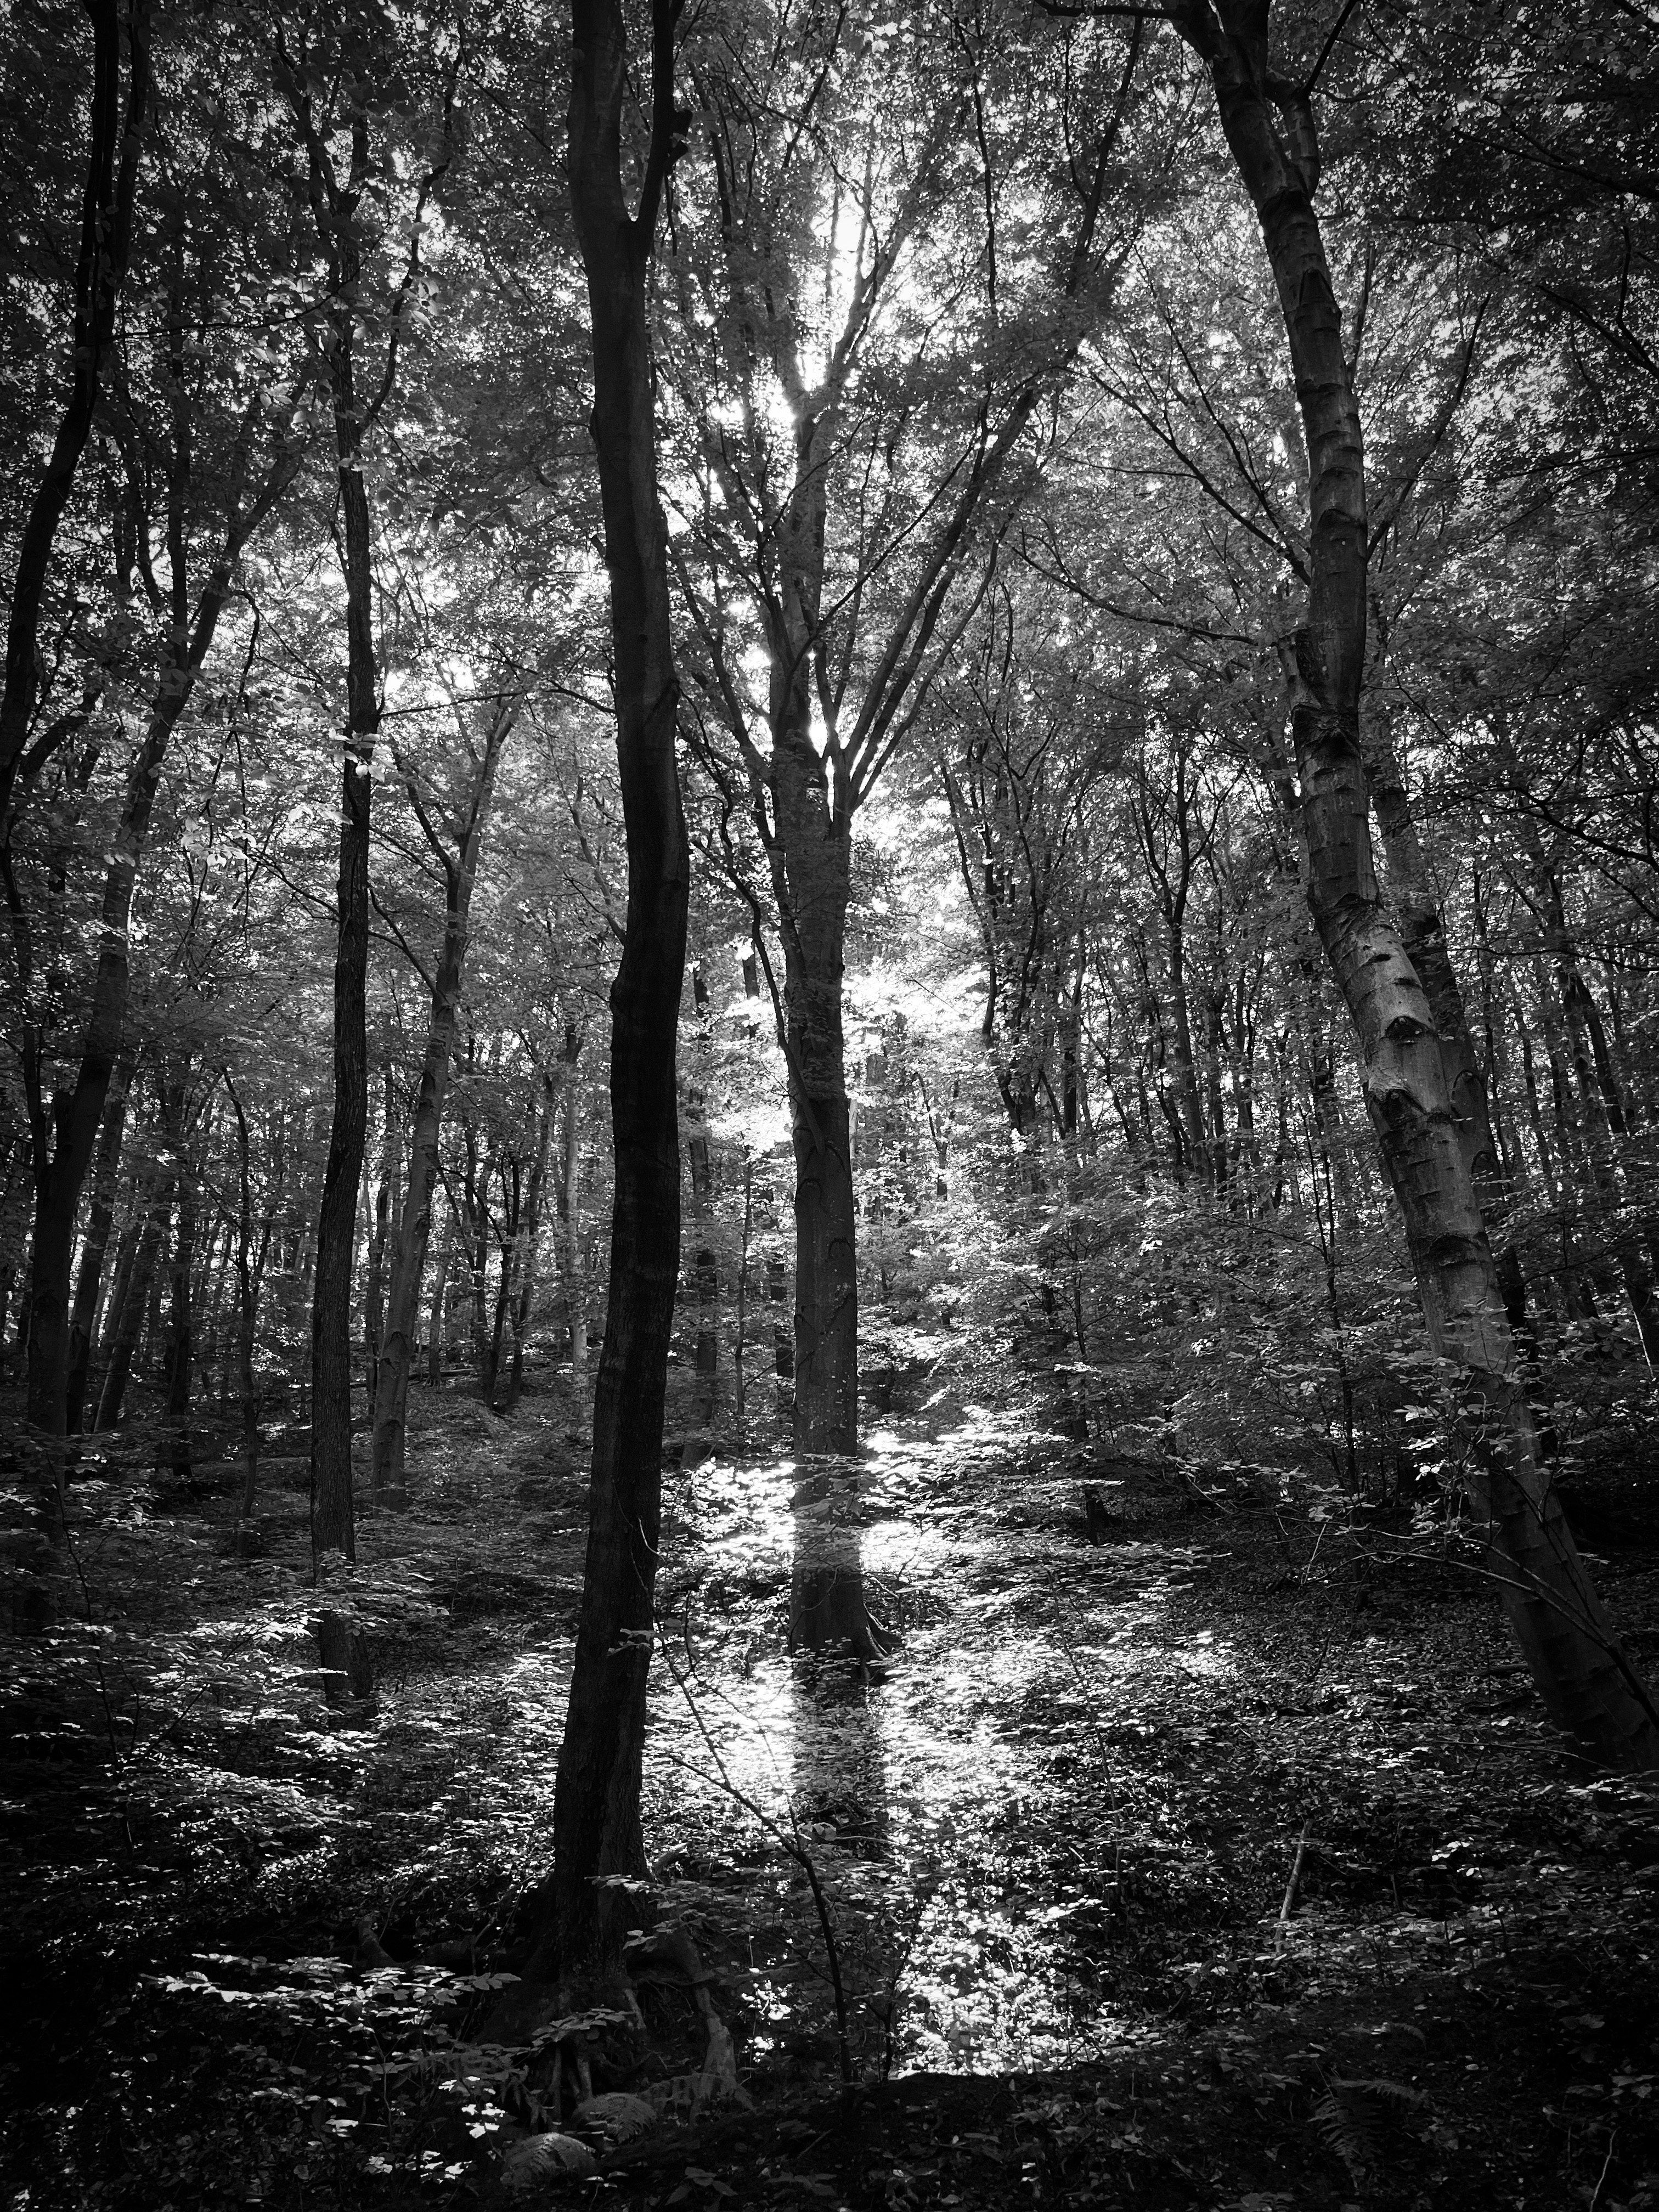 Fekete-fehér fénykép egy erdőben álló fáról, és az árnyékáról